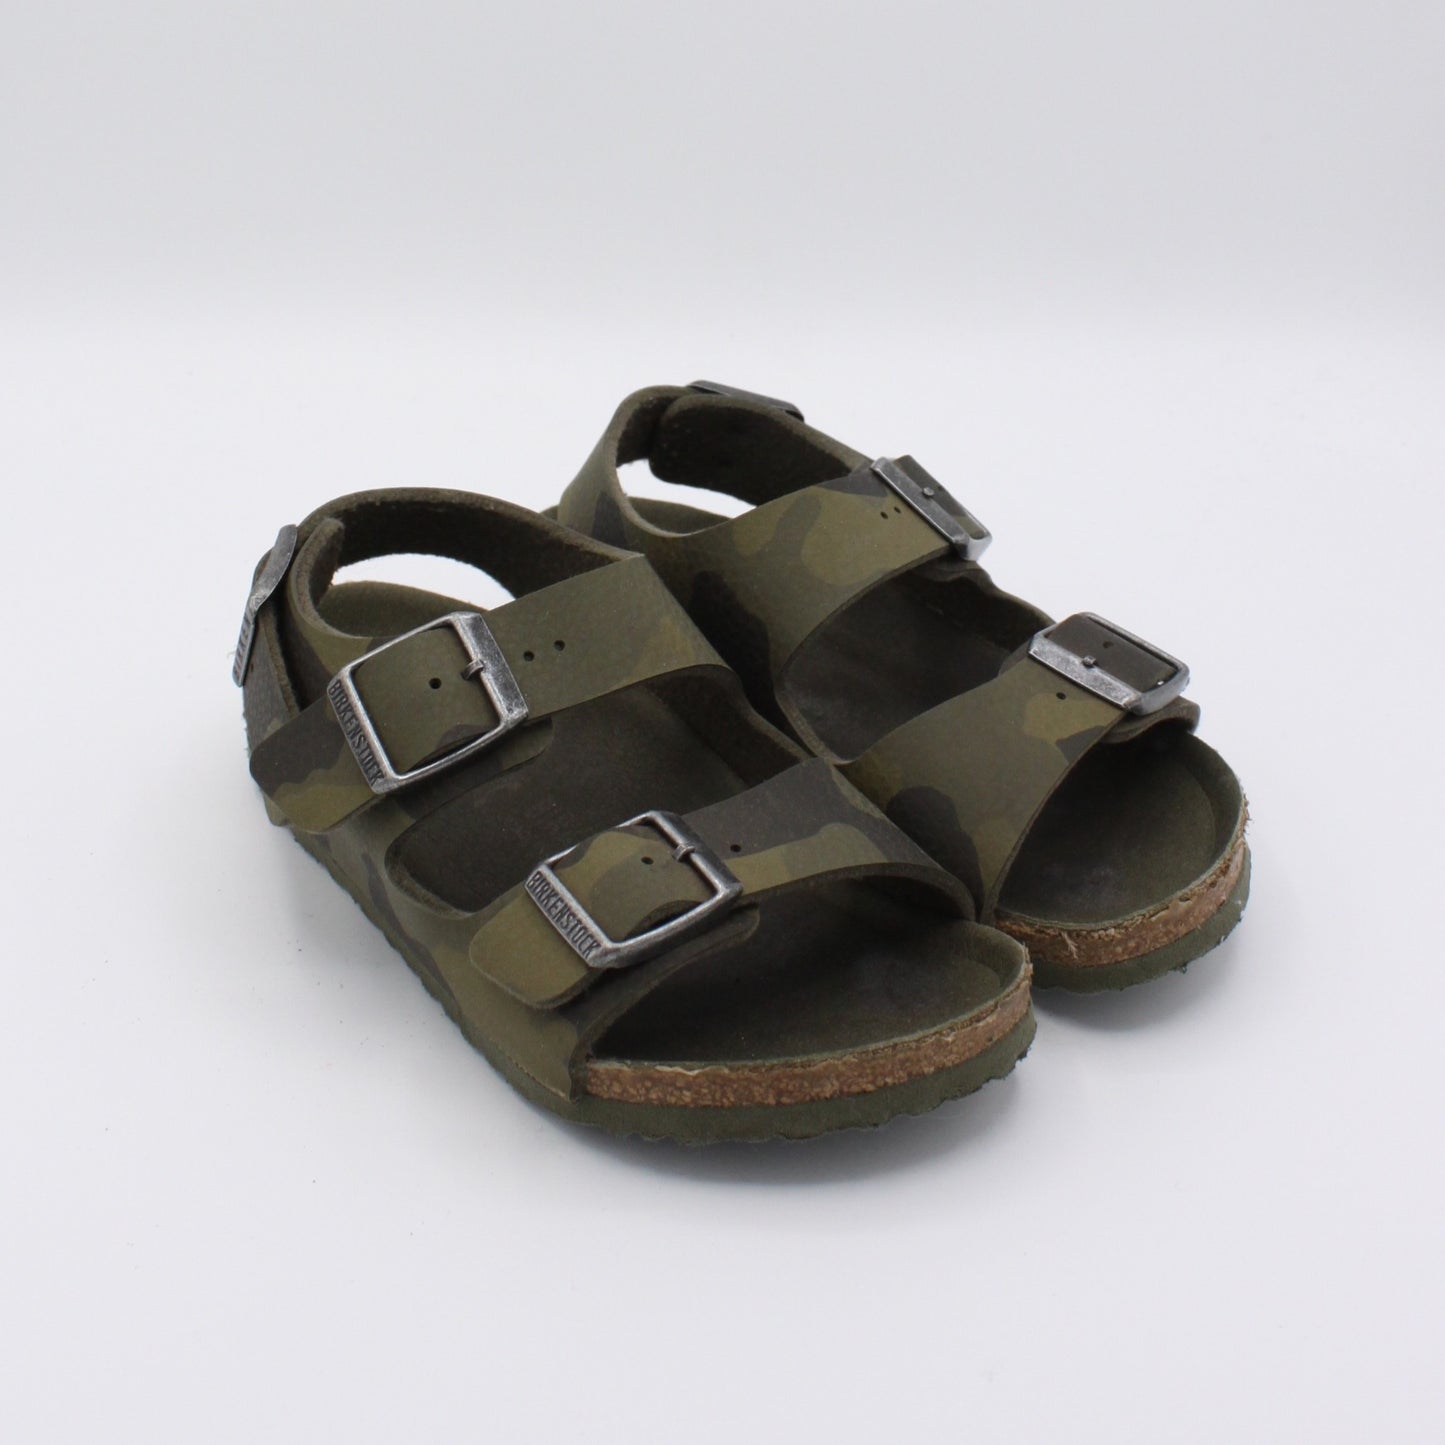 Pre-loved Sandals (EU28)